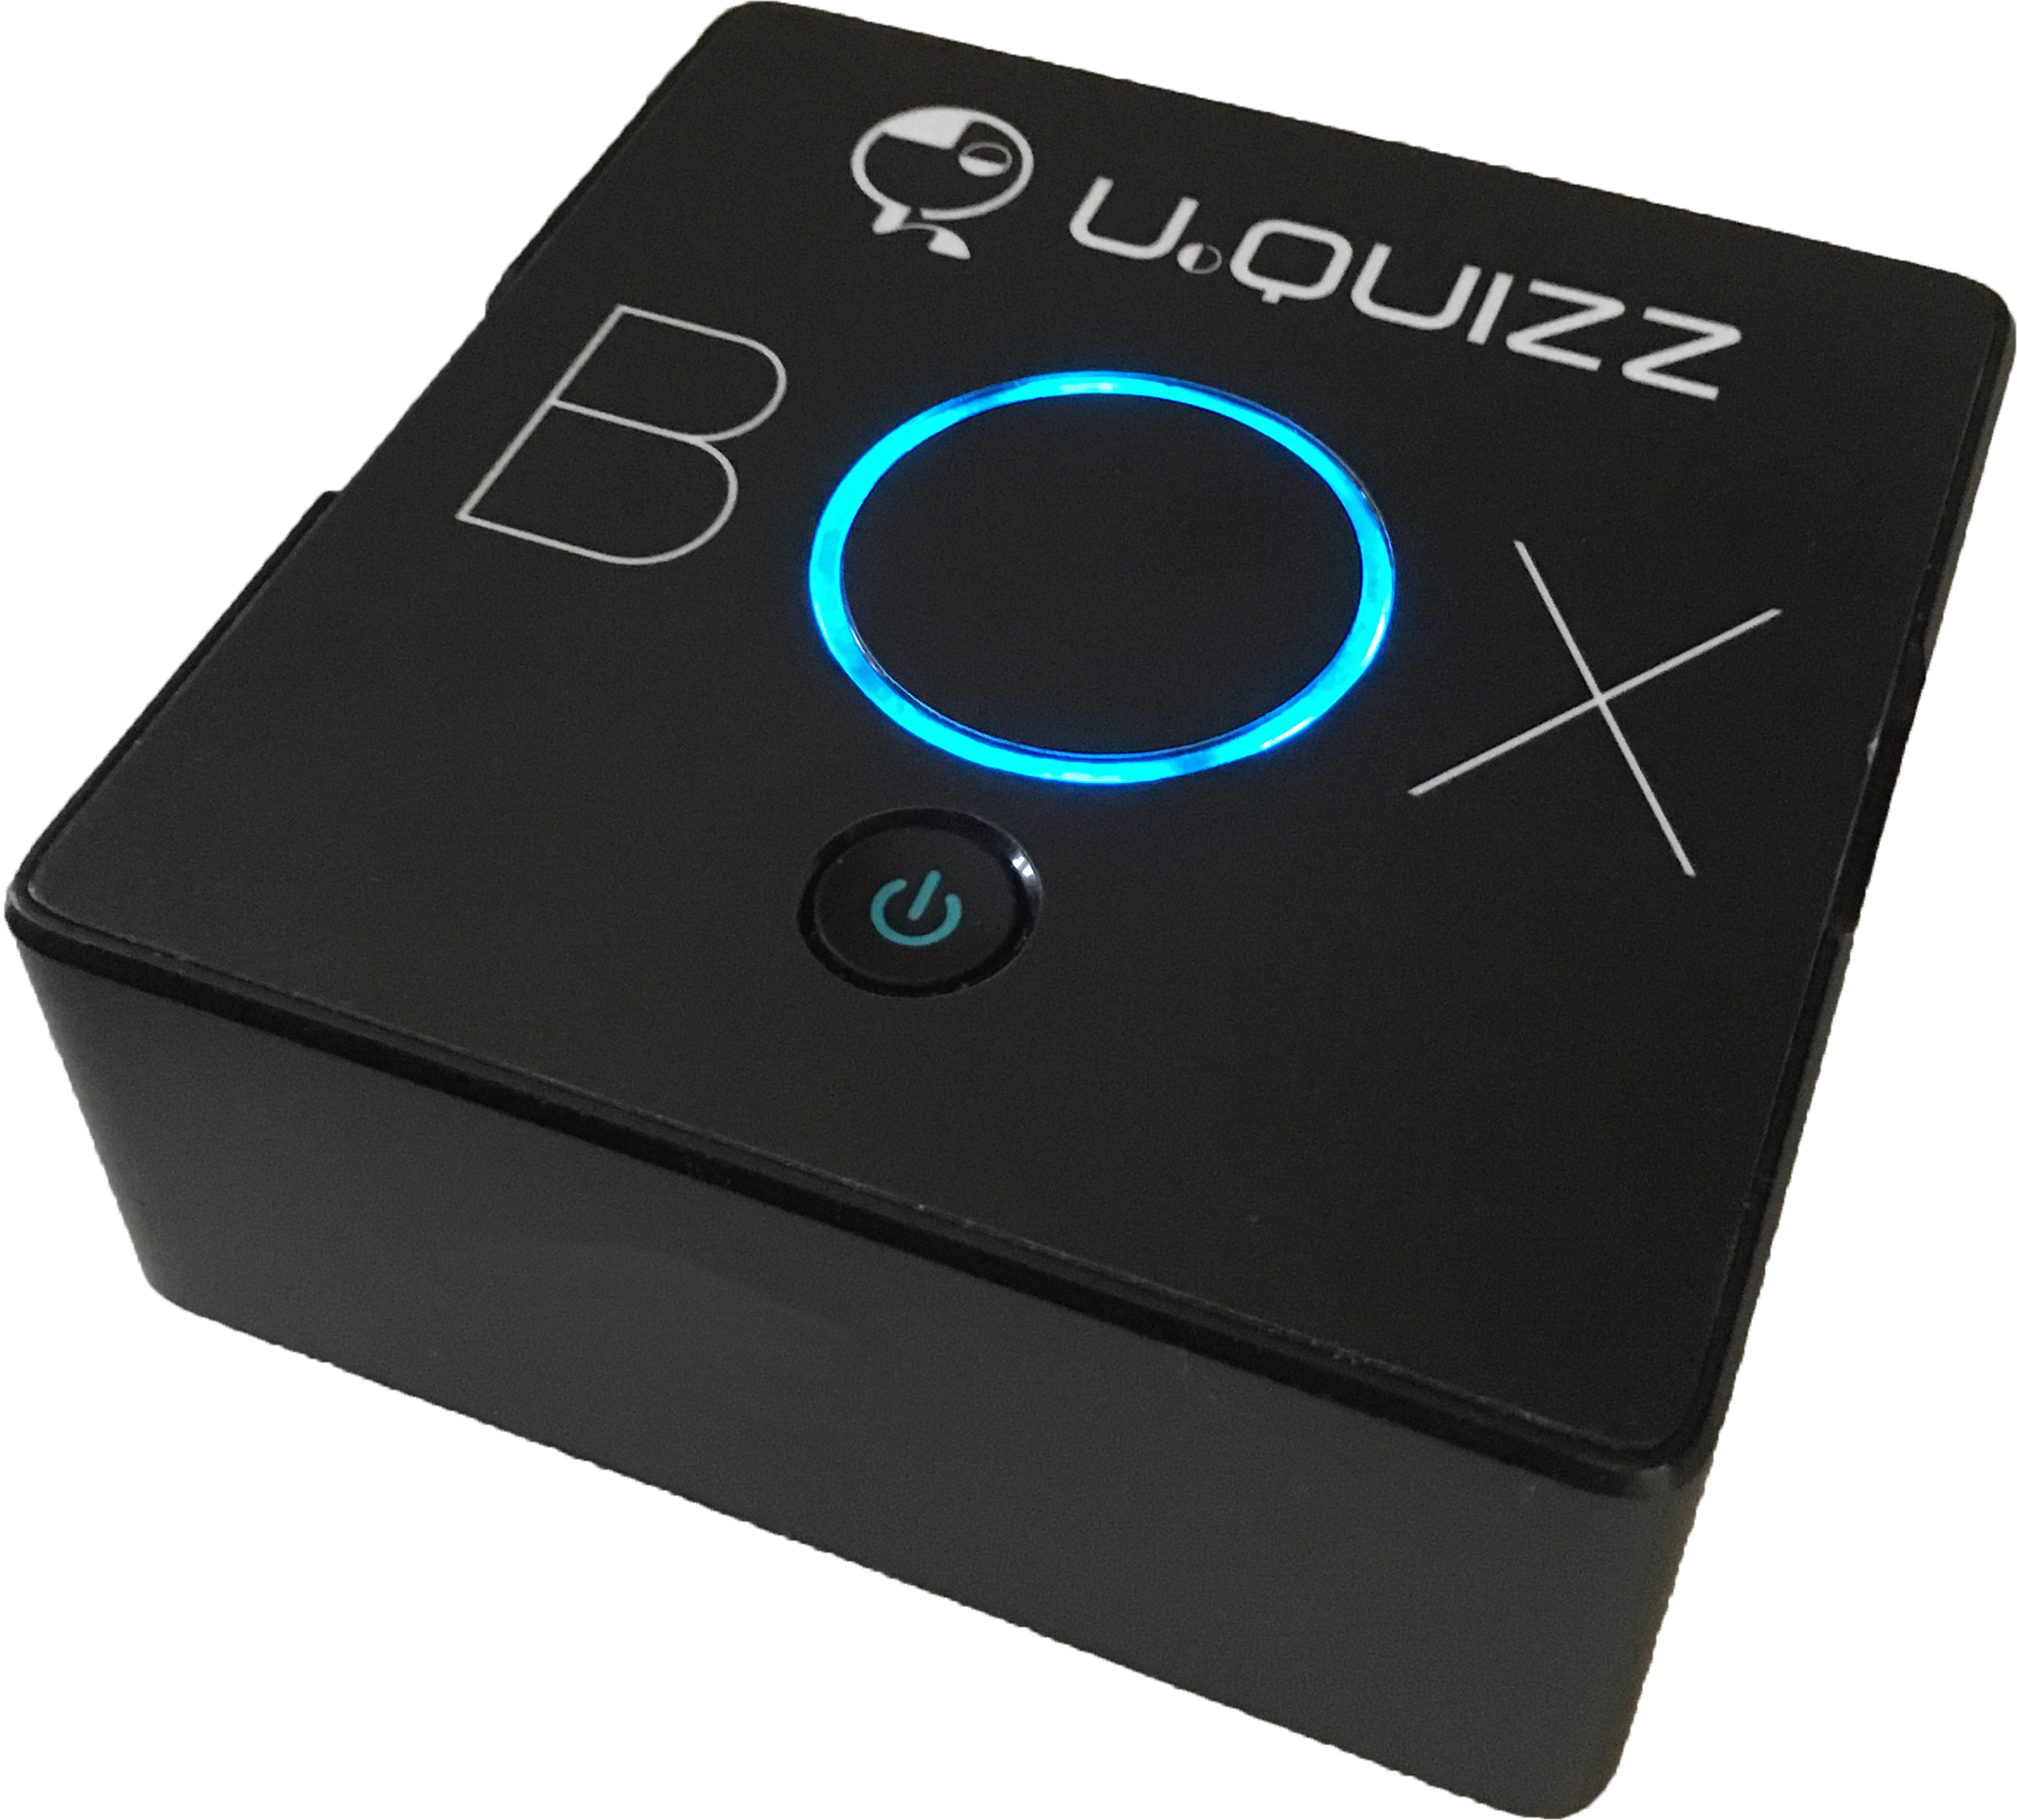 Box autonome pour vos quizz et blindtest avec buzzer sur